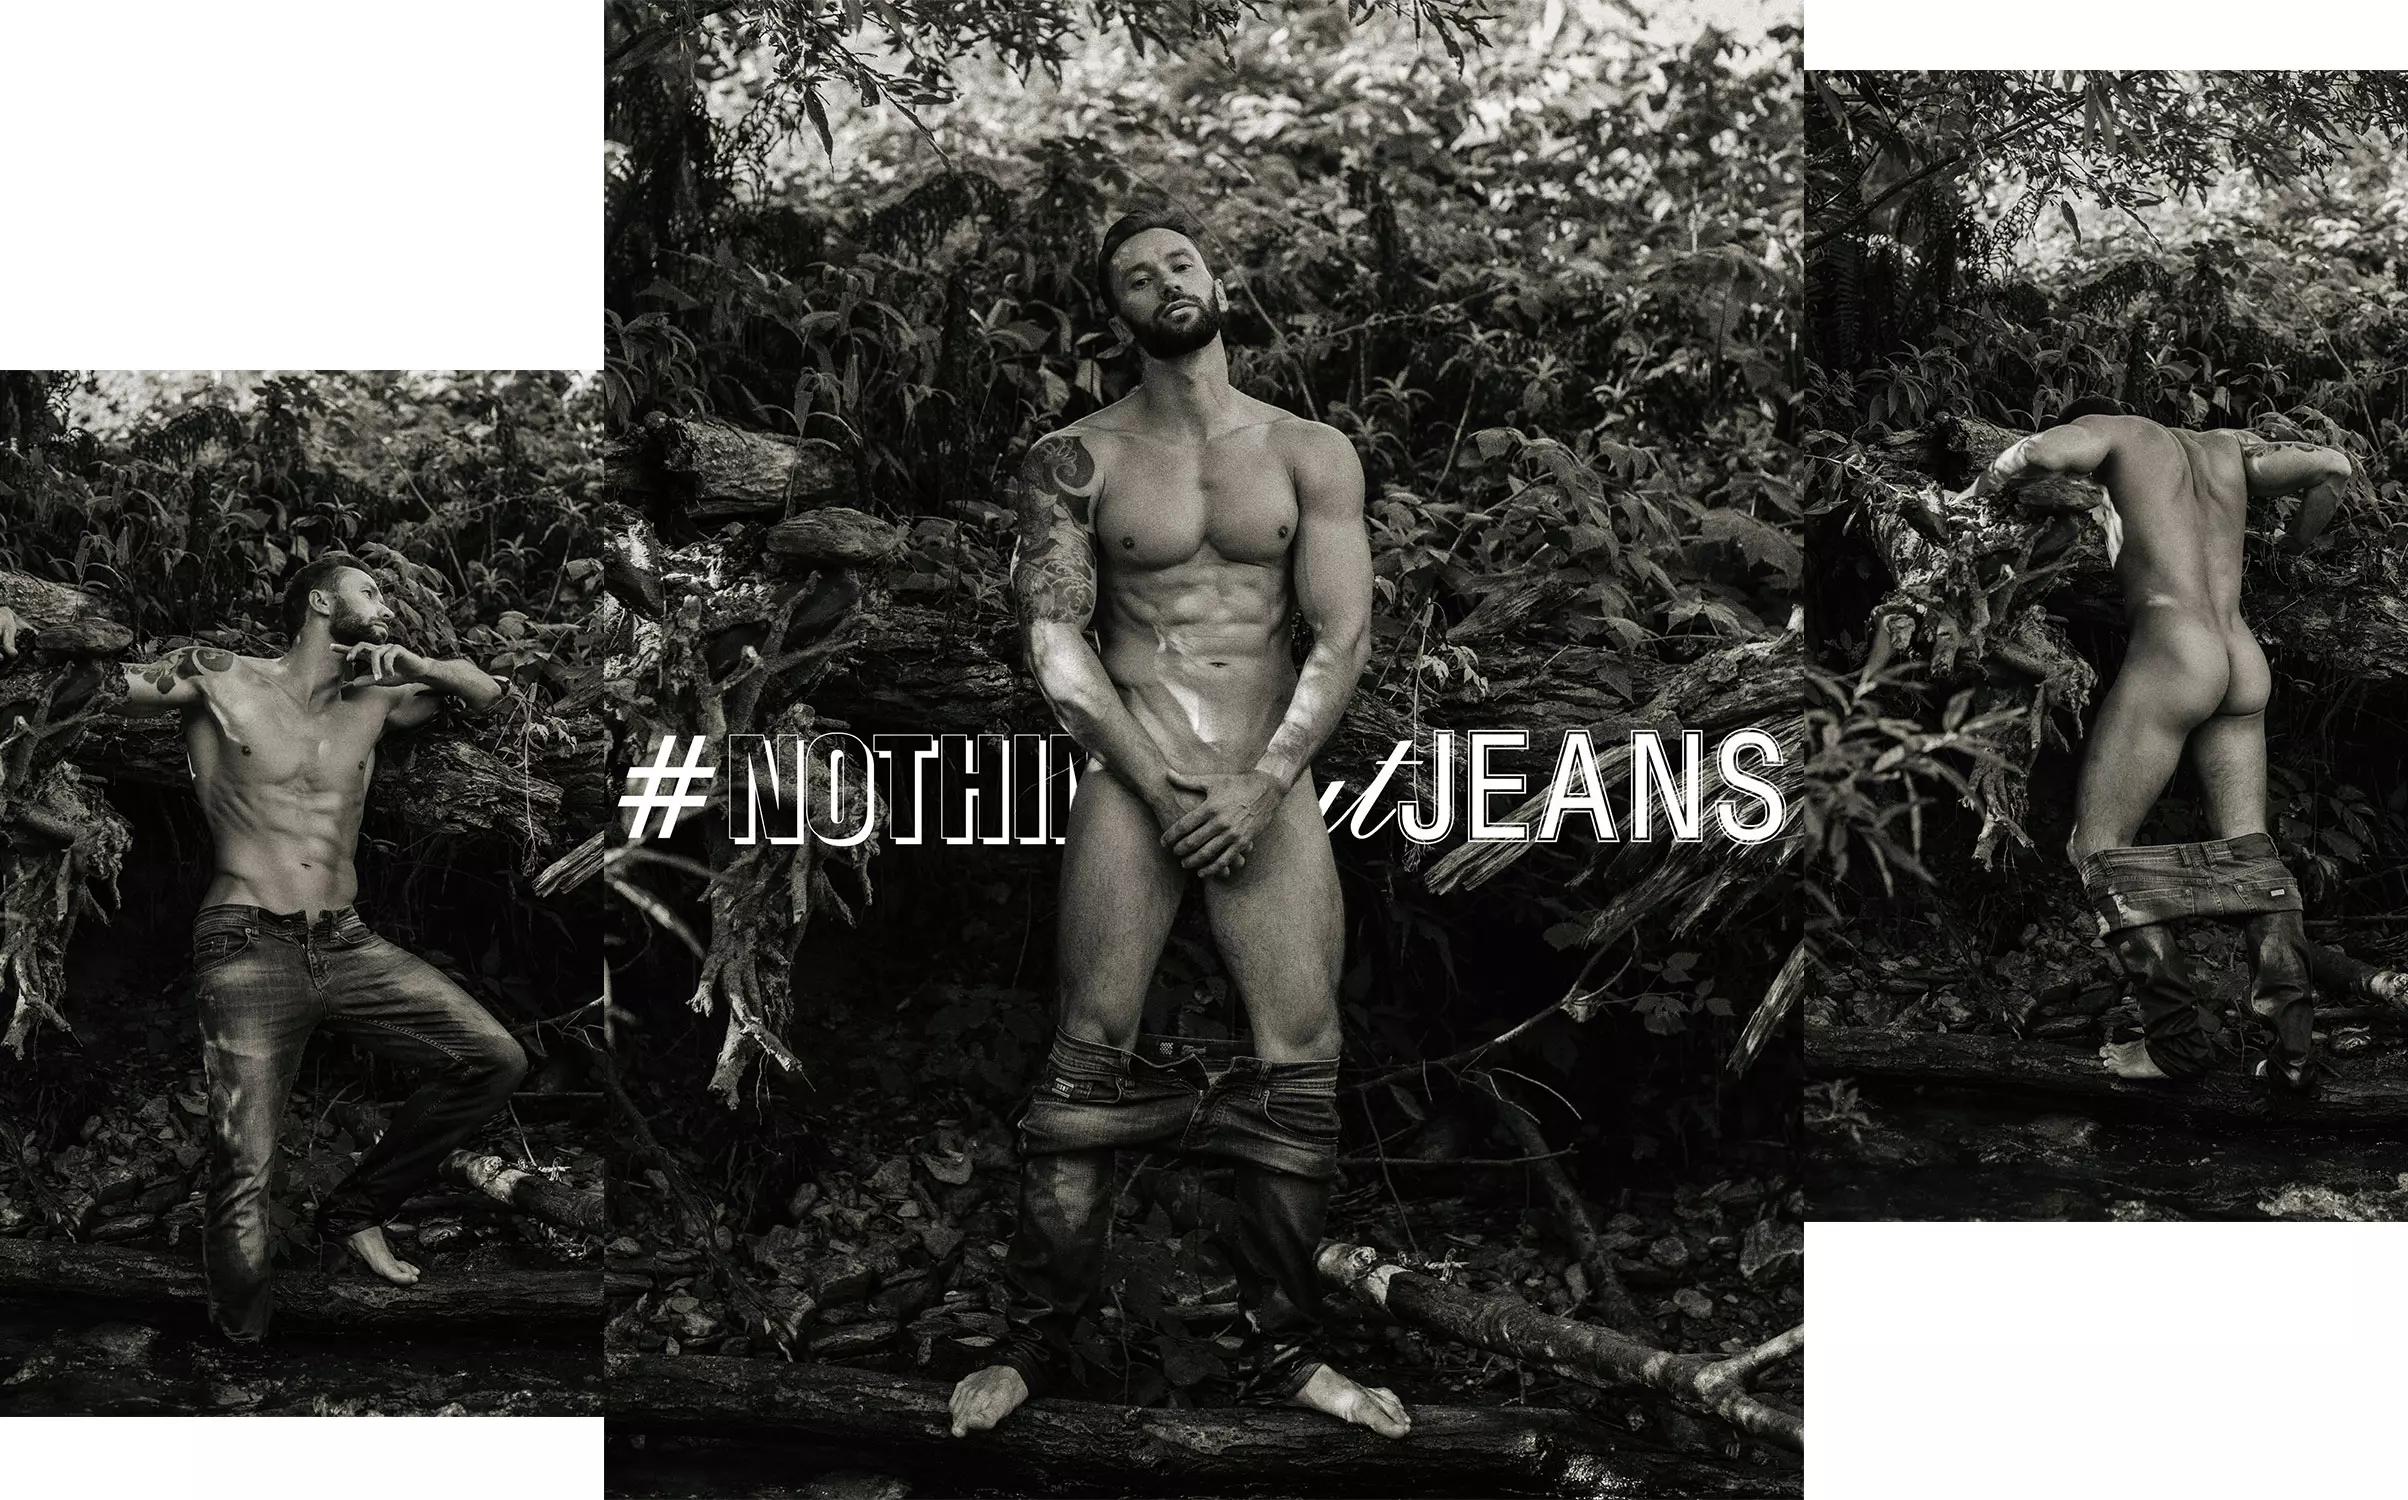 ሚካሂል ፎሚን በ #NothingButJeans በሰርጌ ሊ ነው።